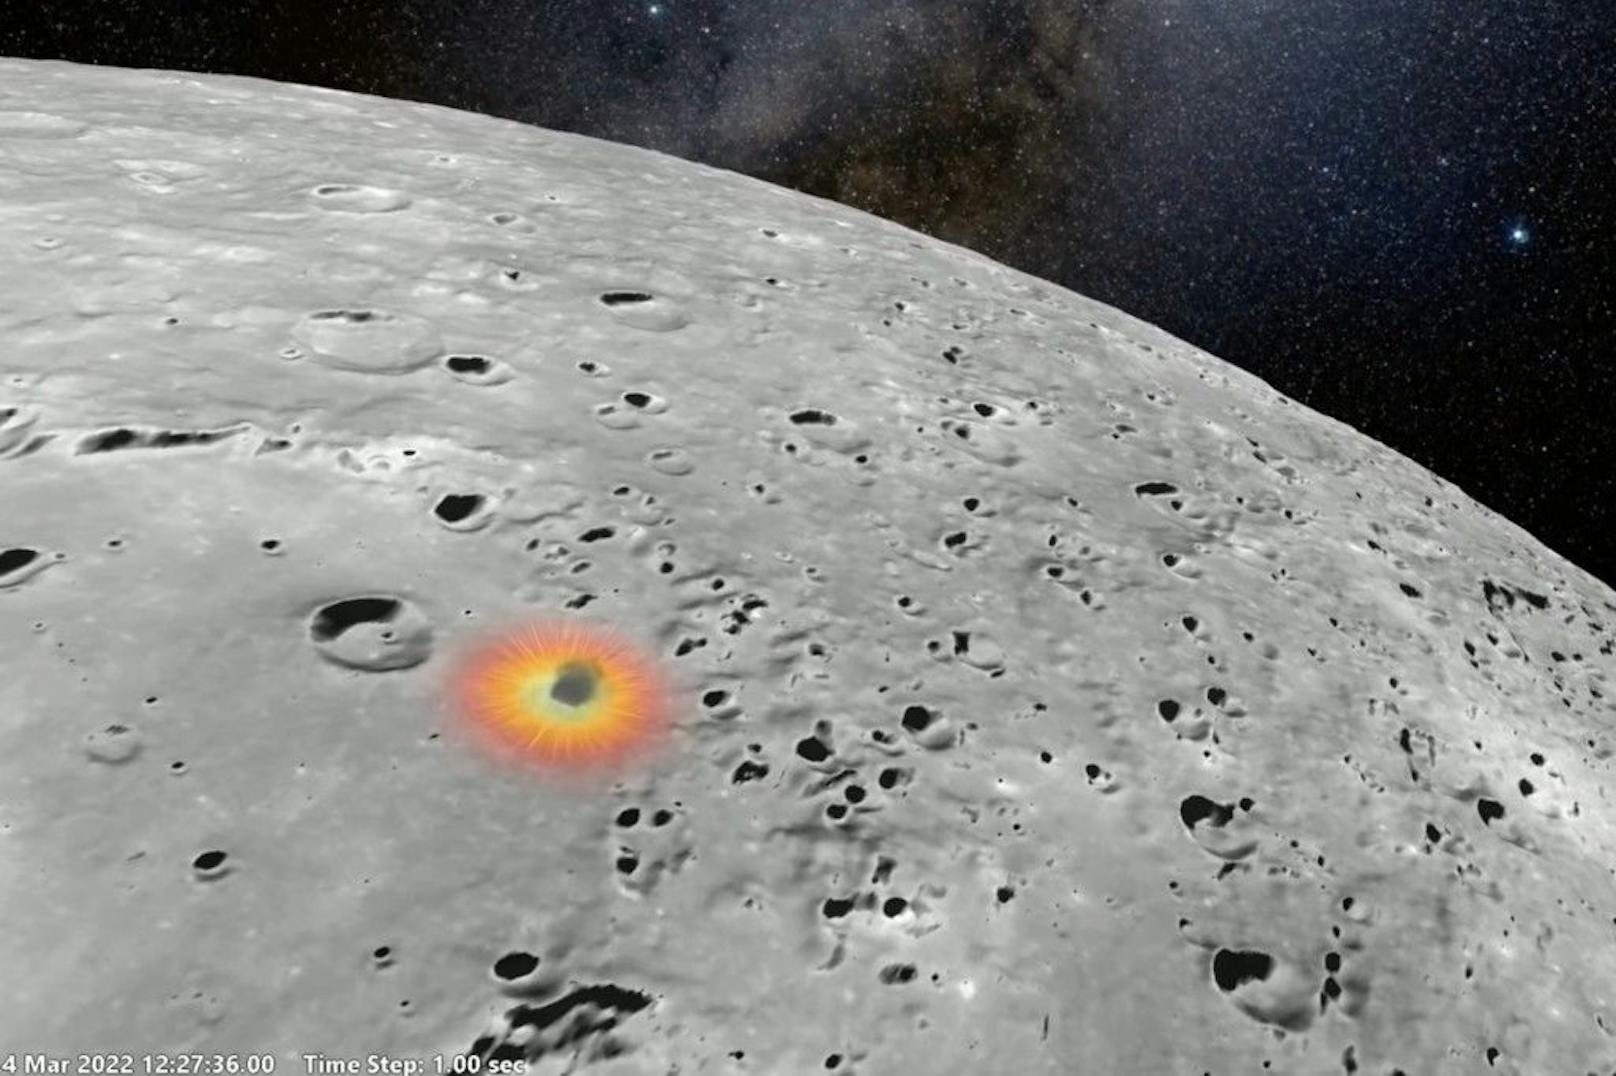 Berechnungen zufolge schlug die Rakete&nbsp;am Rande des Hertzsprung-Kraters auf der Rückseite des Mondes ein.